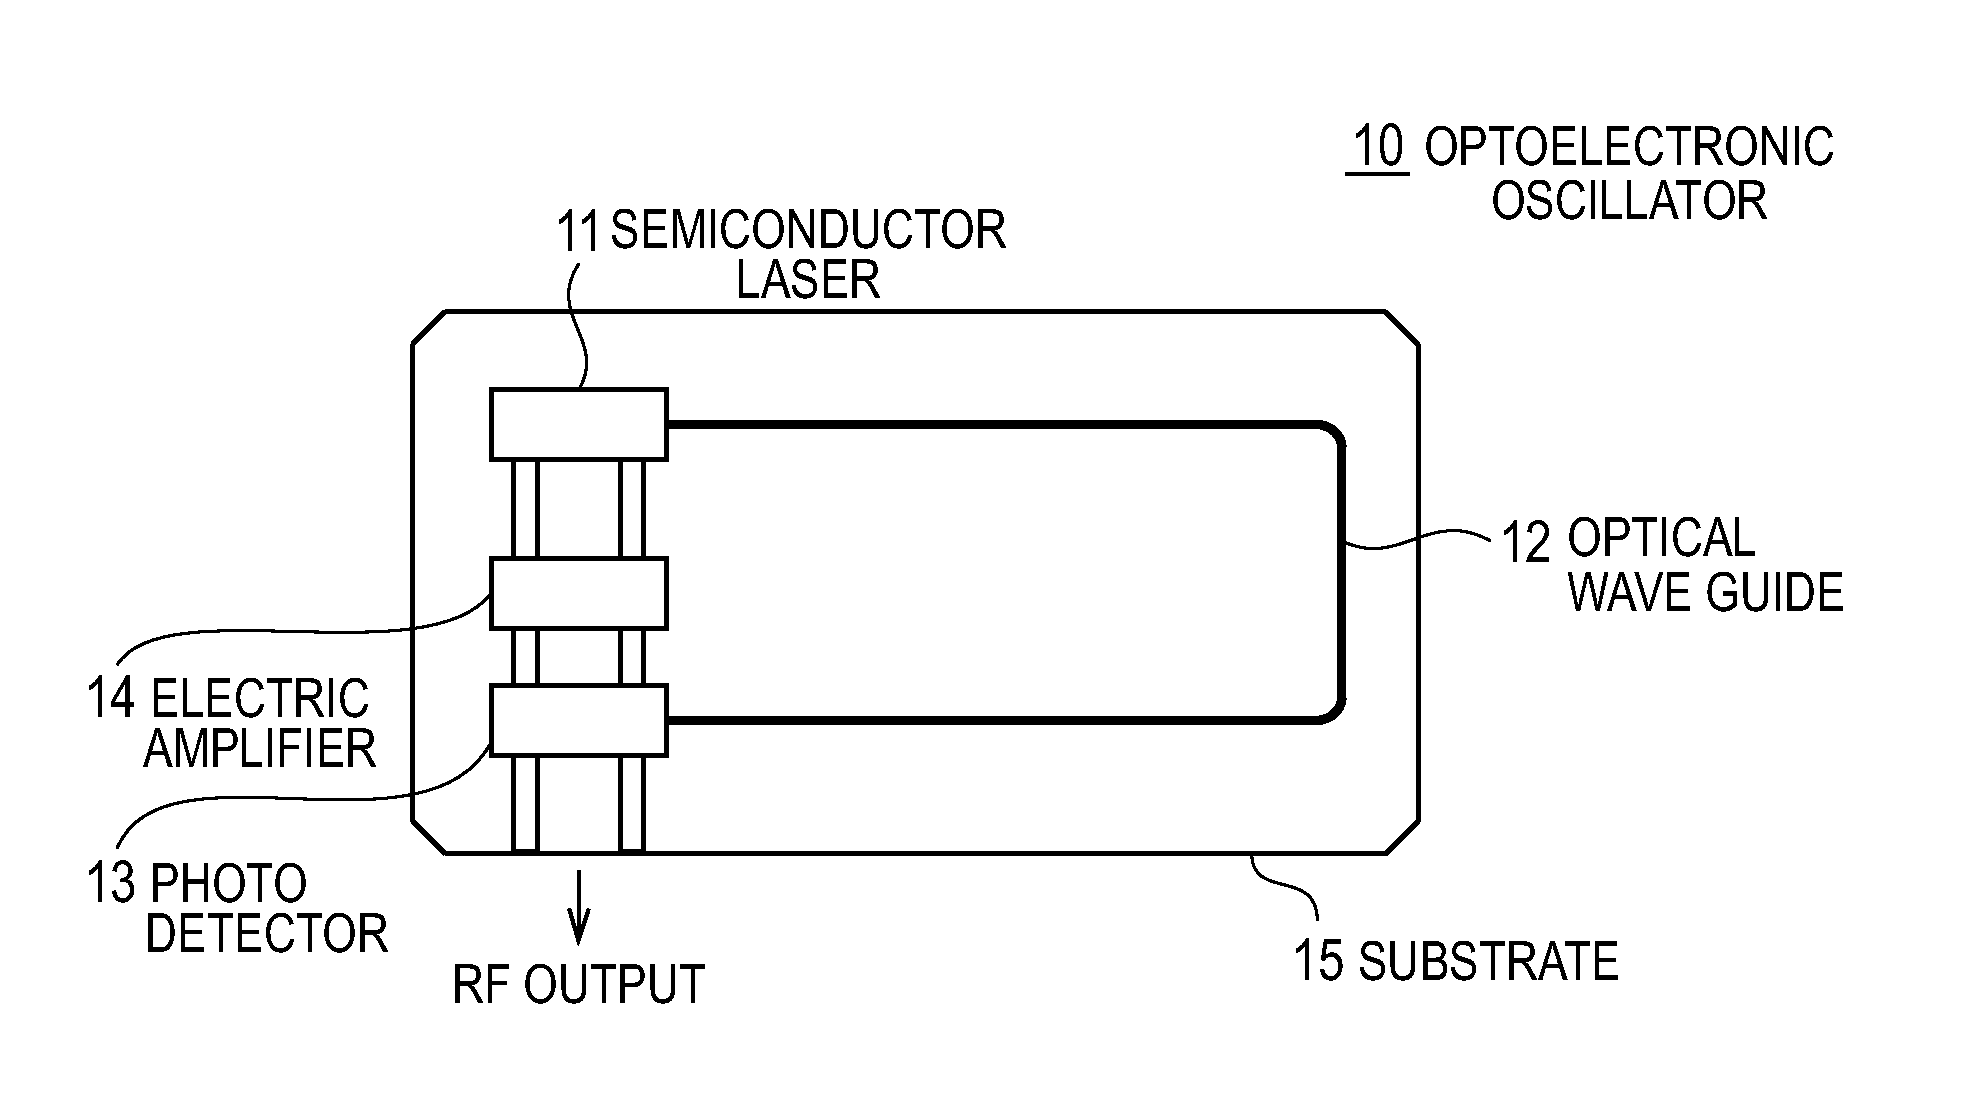 Optoelectronic oscillator and pulse generator